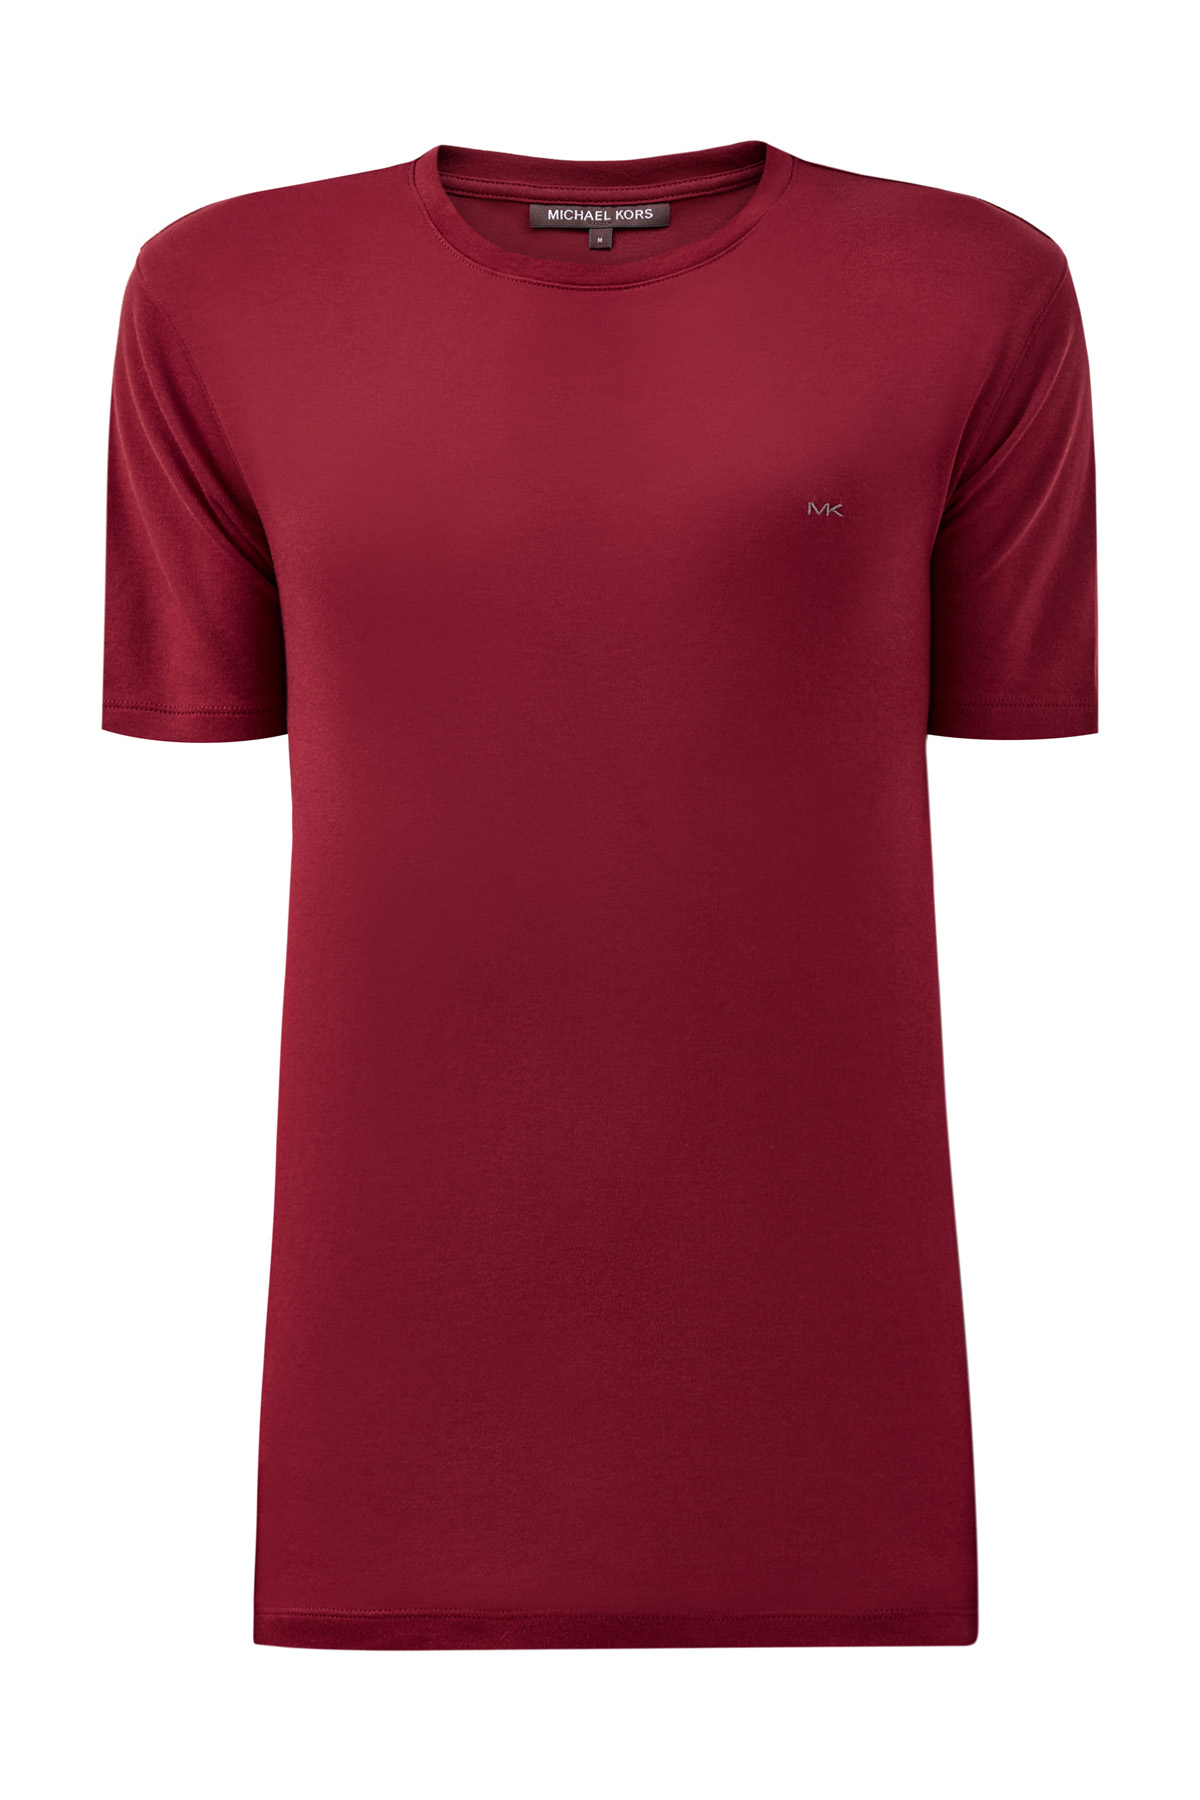 Однотонная футболка с вышитым логотипом MICHAEL KORS, цвет бордовый, размер XL - фото 1